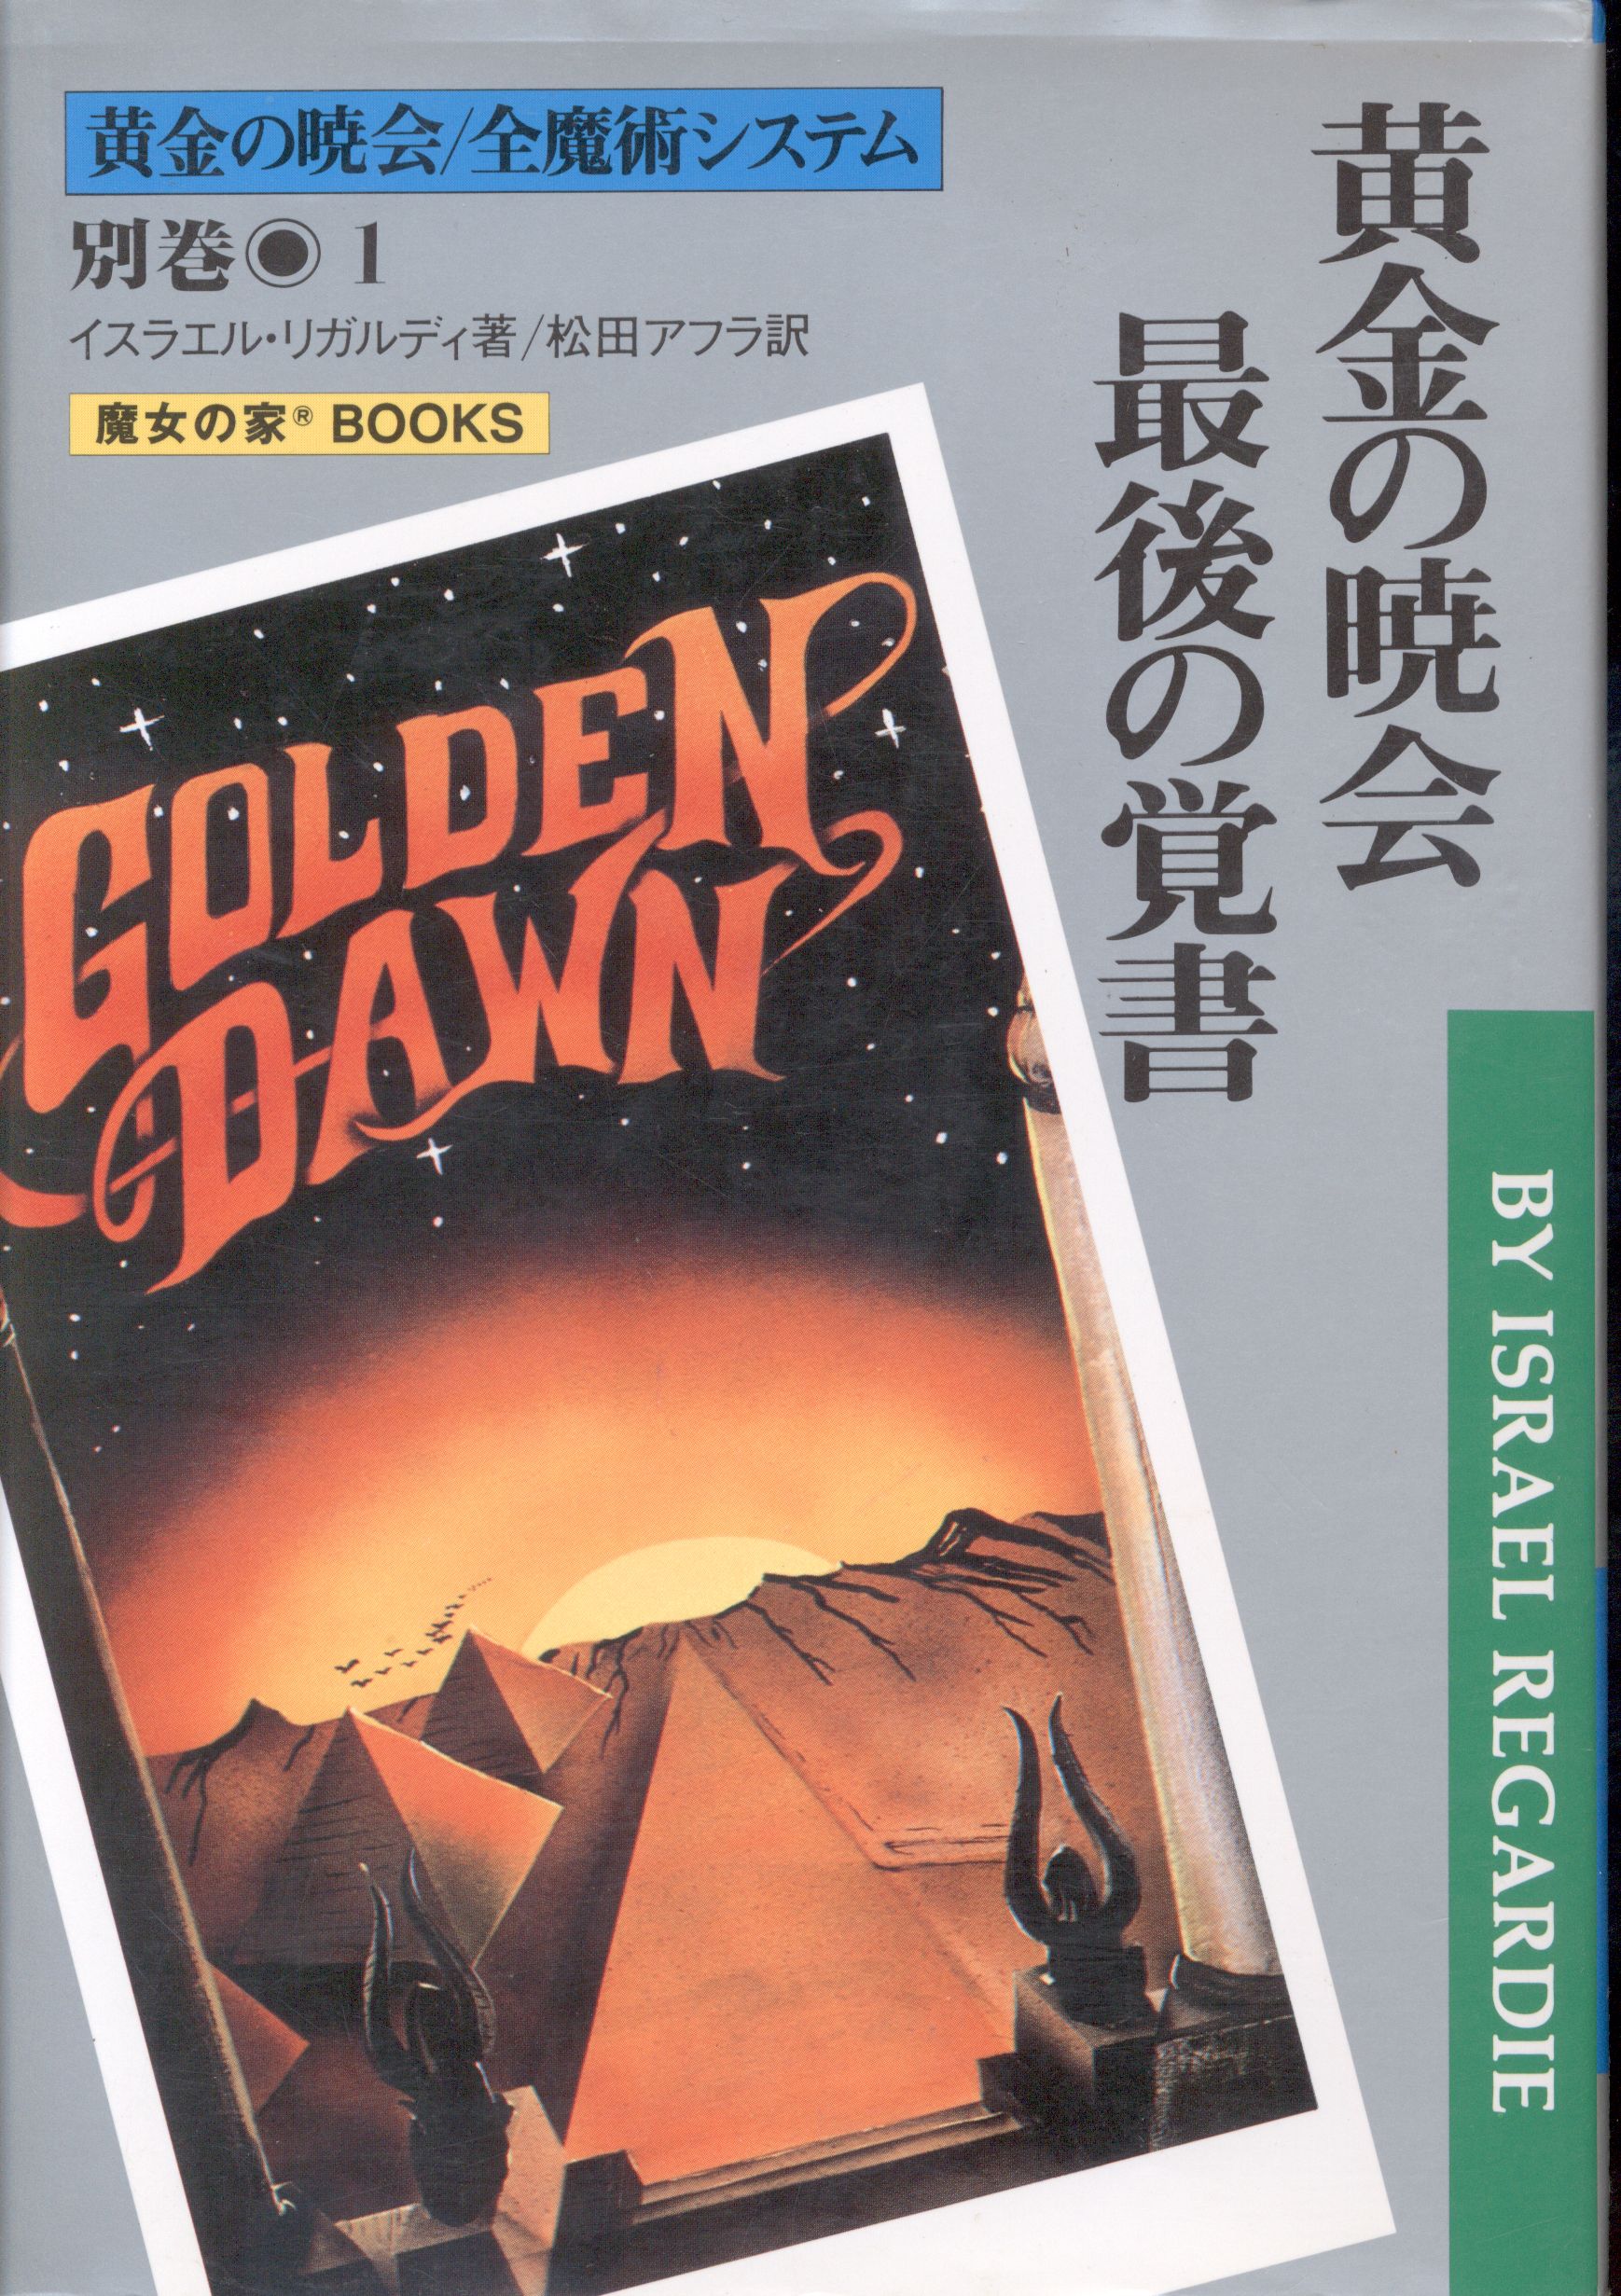 THE GOLDEN DAWN 黄金の暁会/全魔術システム - 人文/社会